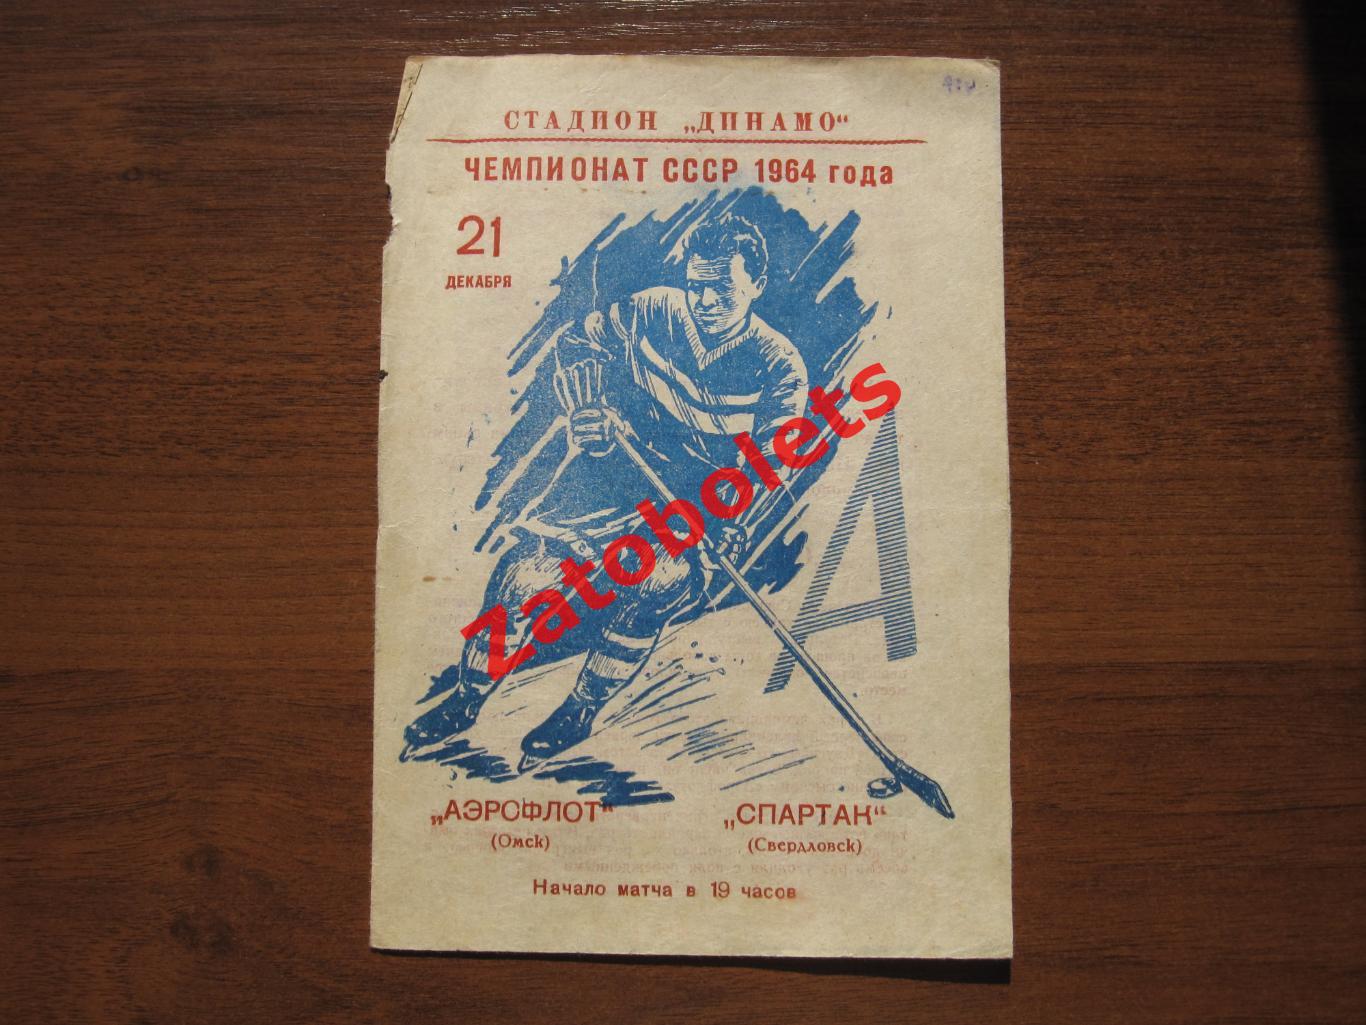 Аэрофлот Омск - Спартак Свердловск 21.12.1963